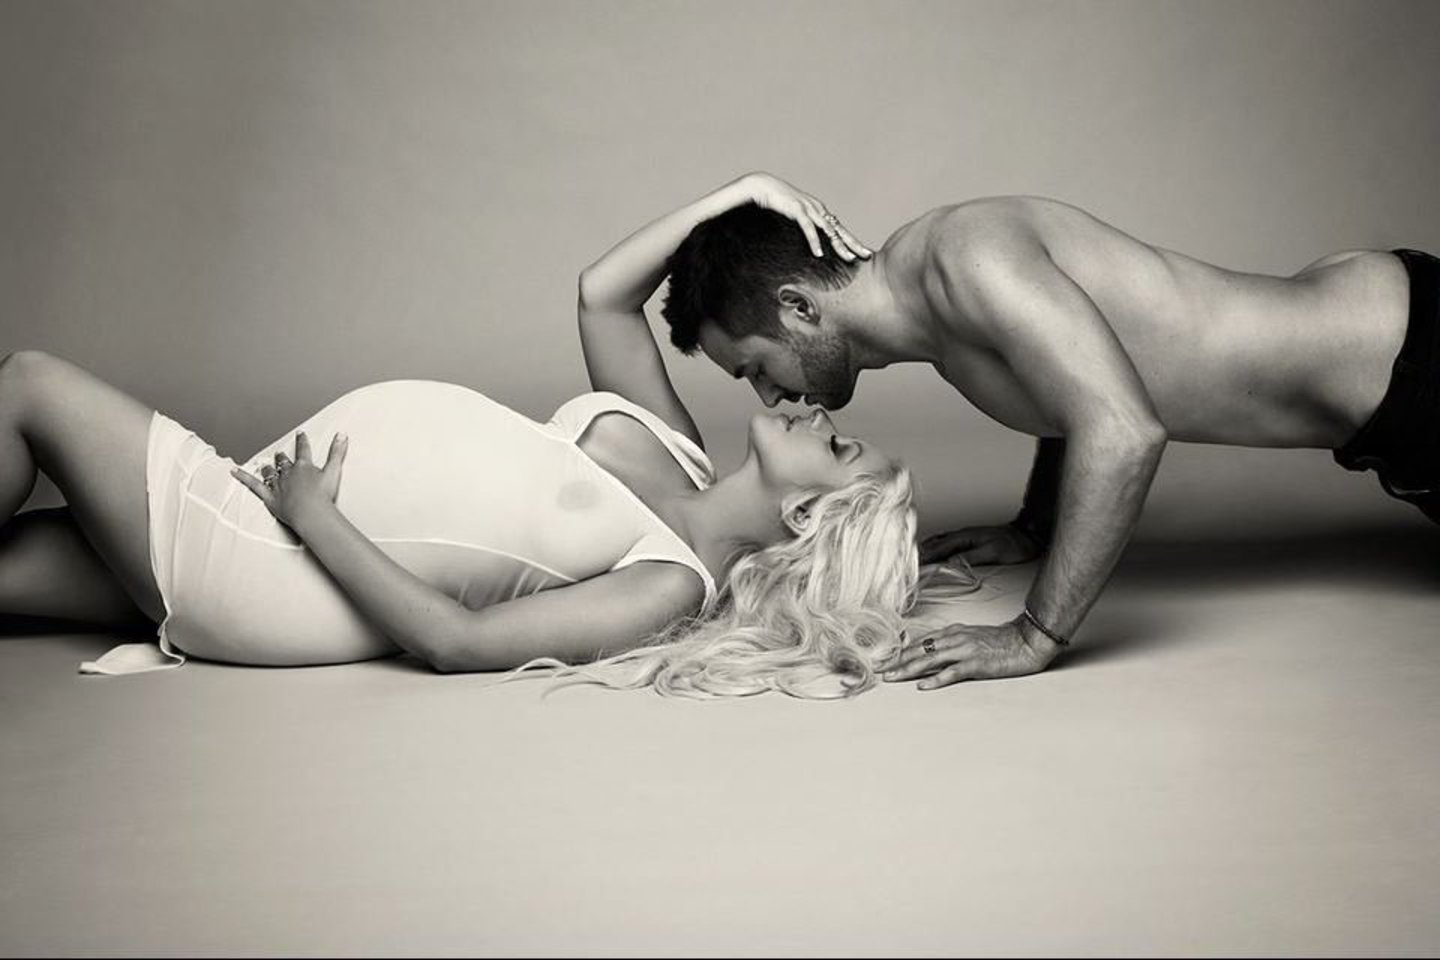 Ch.Aguilera nusimetė visus drabužius, kad pademonstruotų savo papilnėjusio kūno formas žurnalo „V“ plakatui.<br>„vmagazine“ nuotr.